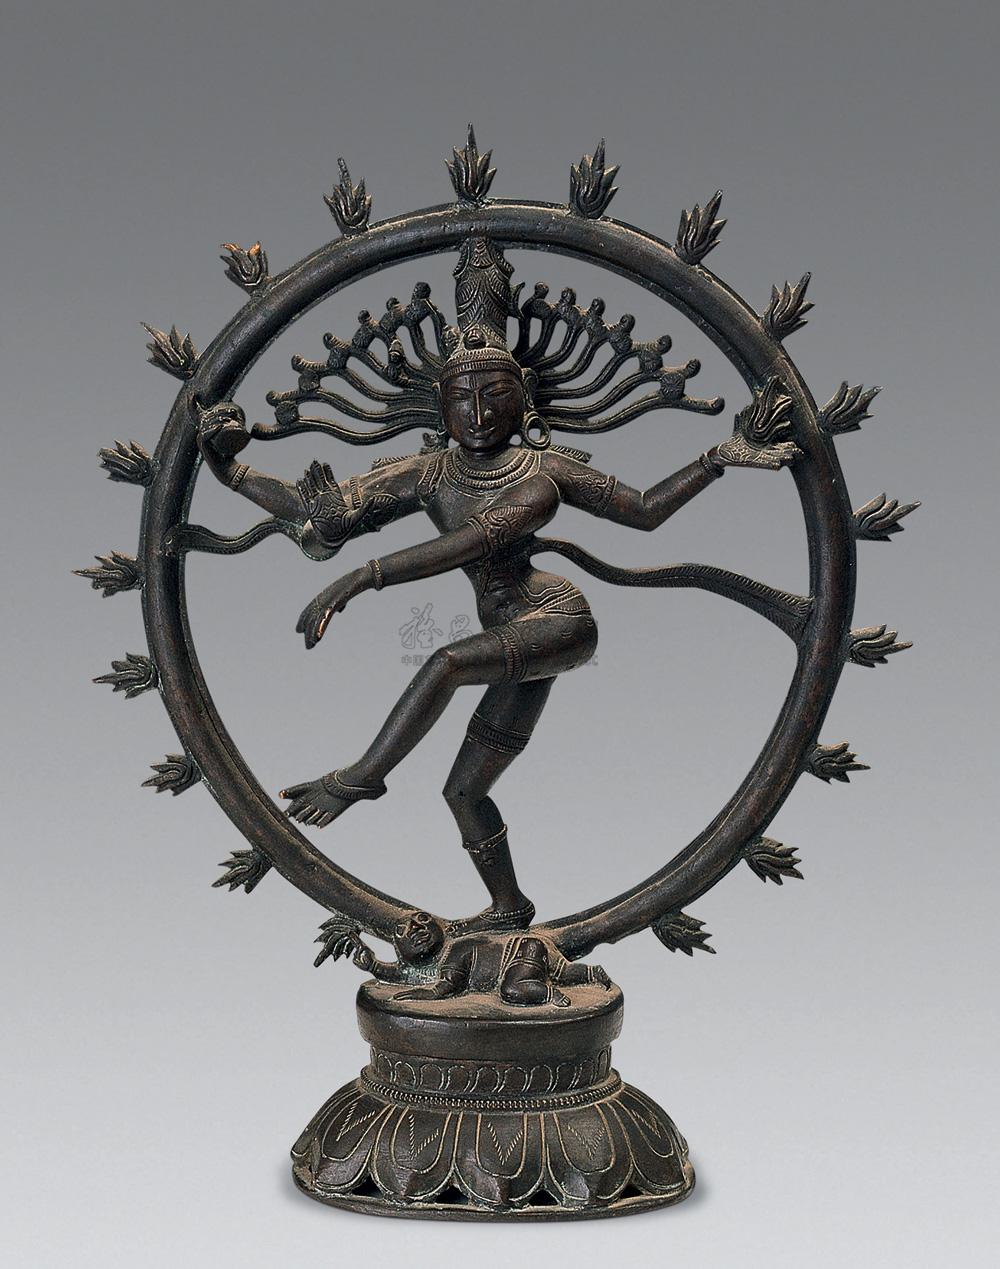 1157 十一世纪 舞王湿婆(shiva)立像